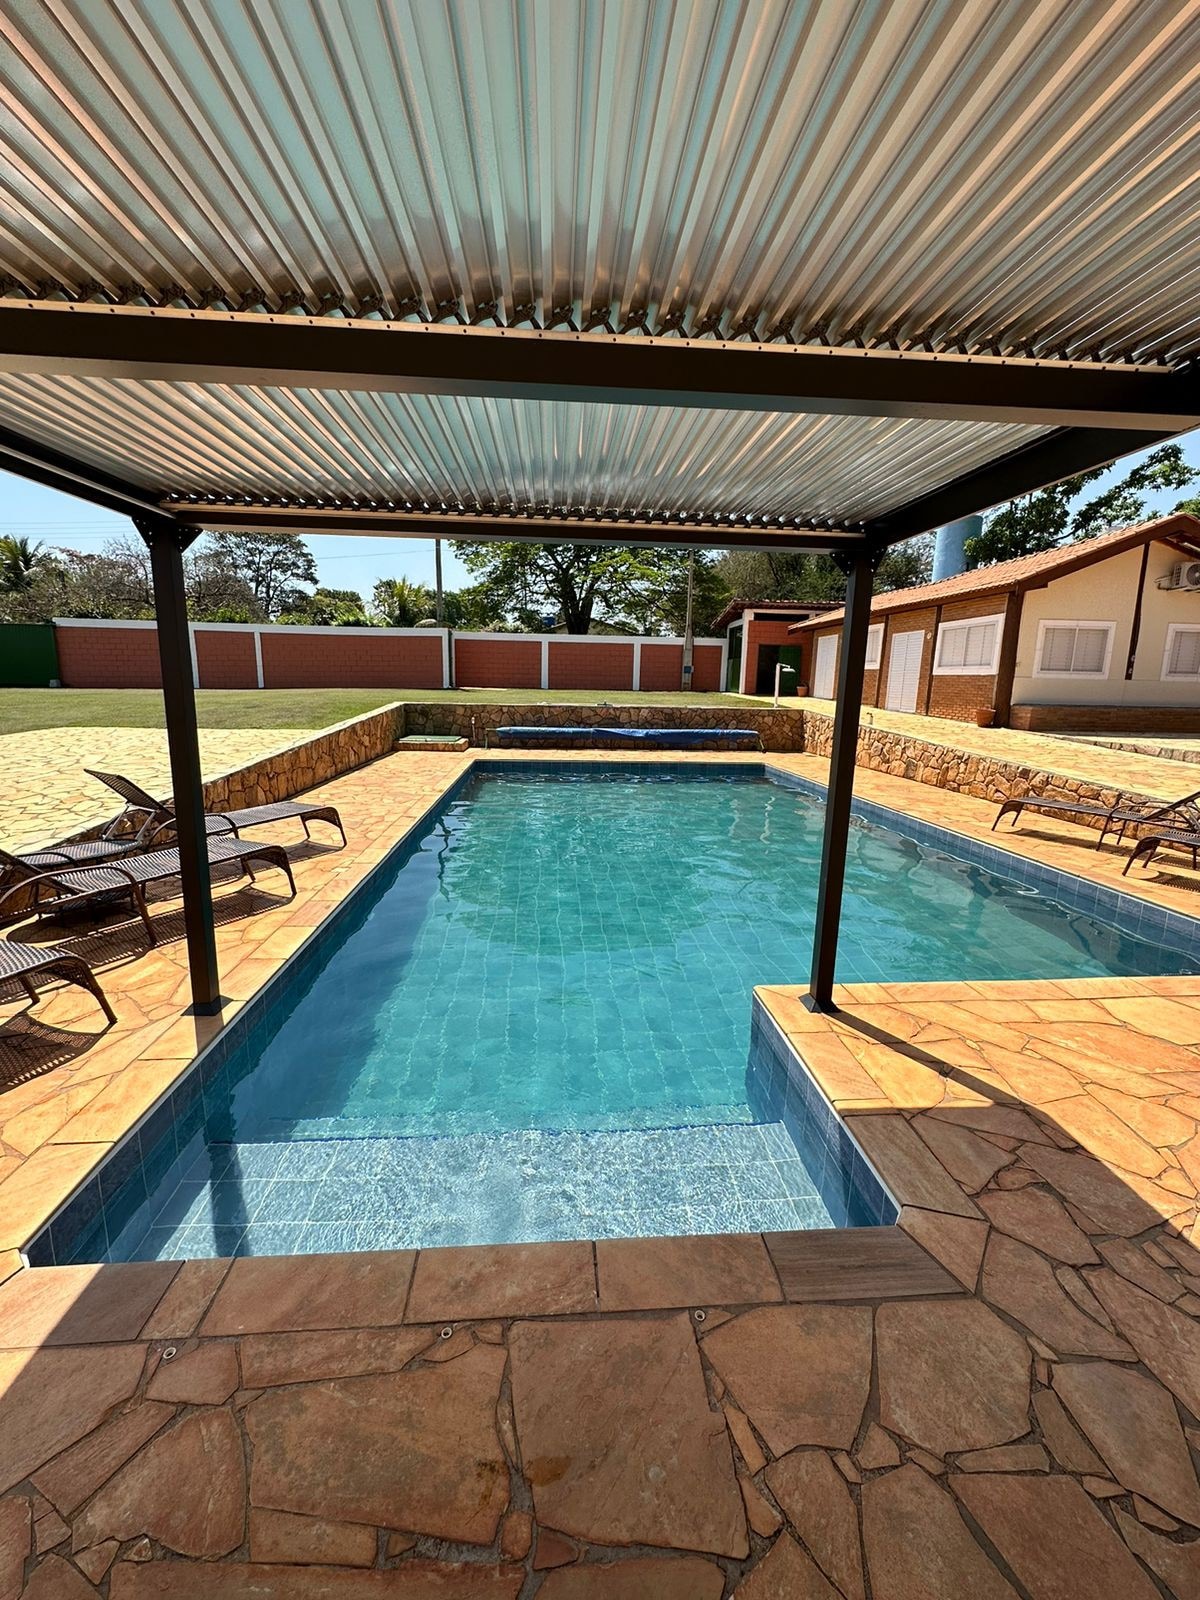 Casa de campo espaçosa com piscina aquecida.